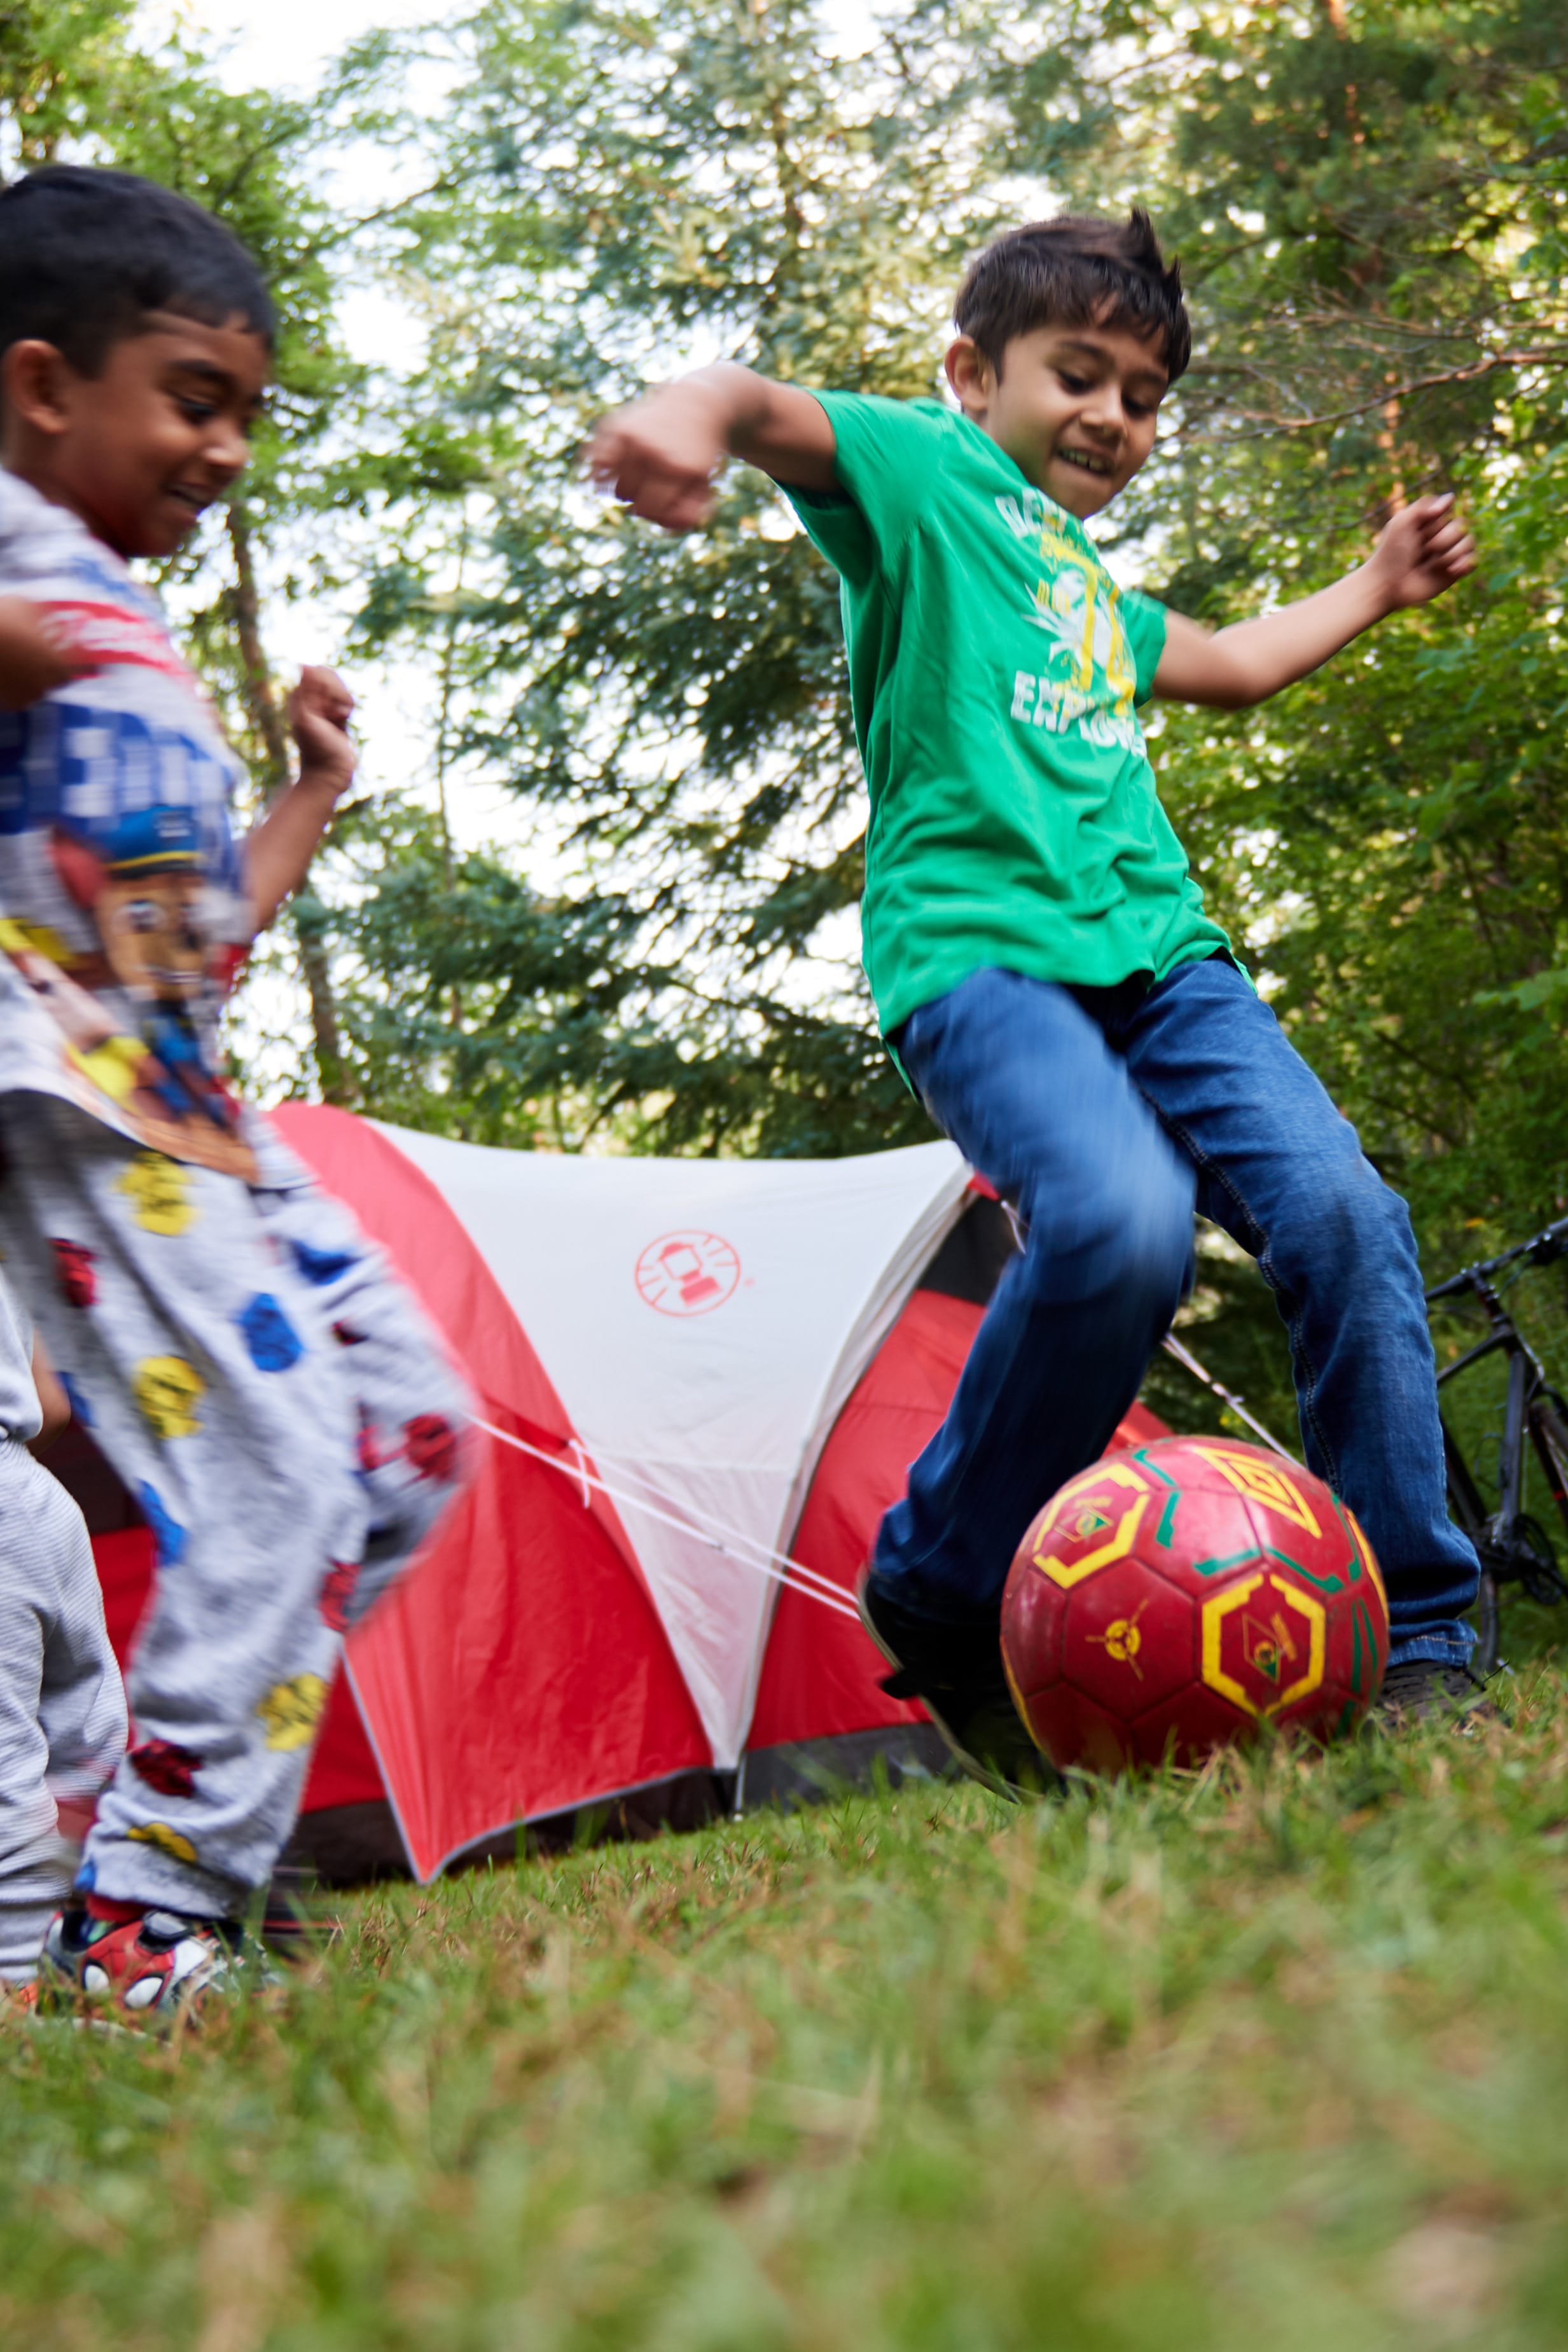 Deux jeunes enfants jouant avec un ballon de soccer, en camping.